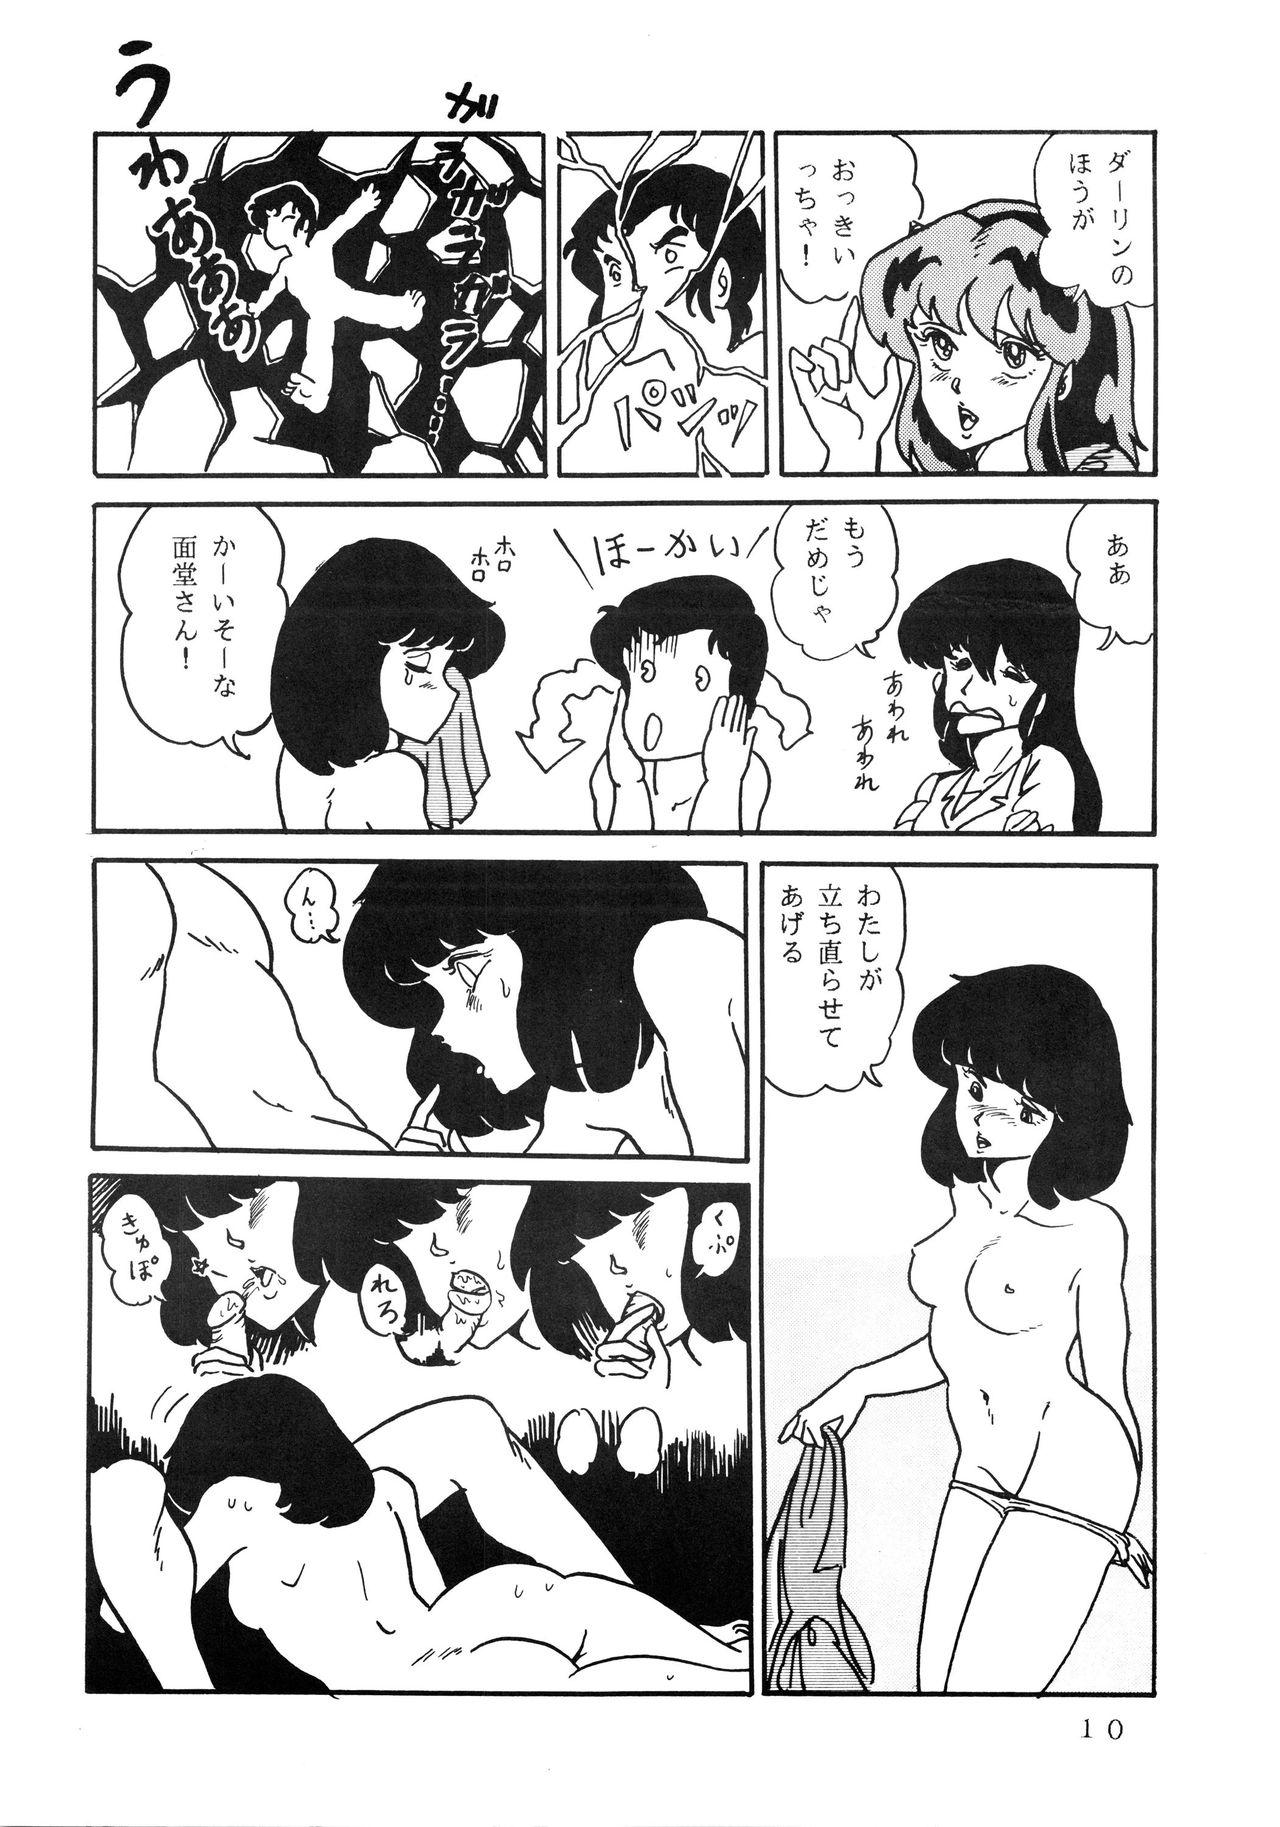 Show Shijou Saiaku no LUM 4 - Urusei yatsura 18yo - Page 10